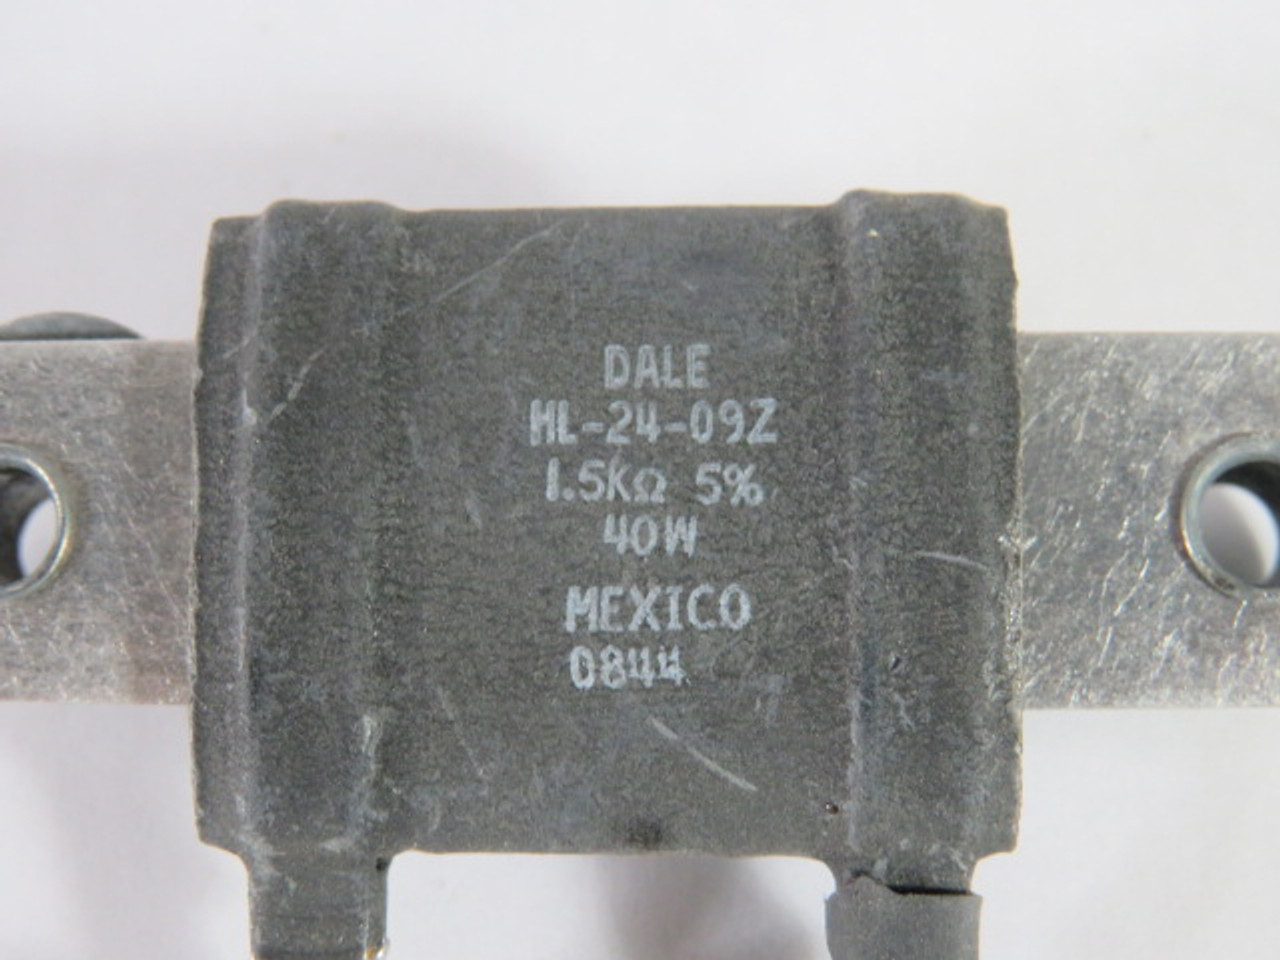 Dale HL-24-09Z Wirewound Resistor 1.5K Ohms 5% 40W USED